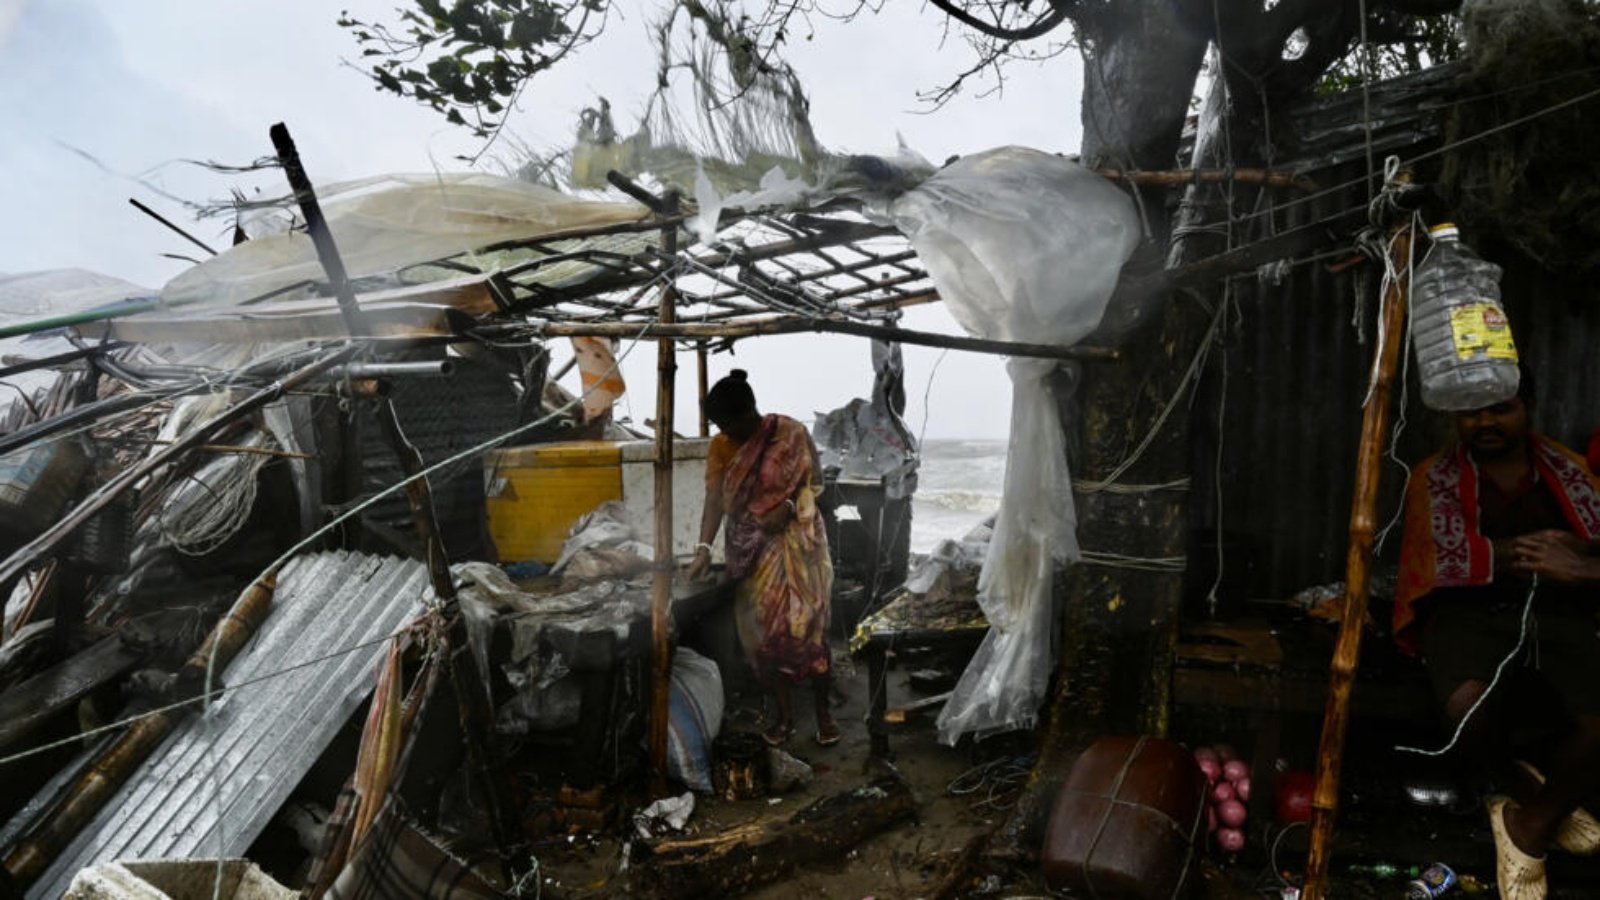 سيدة تقف بجوار منزلها المتضرر بعد وصول إعصار رمال إلى اليابسة في بنغلادش سيدة تقف بجوار منزلها المتضرر بعد وصول إعصار رمال إلى اليابسة في بنغلادش 